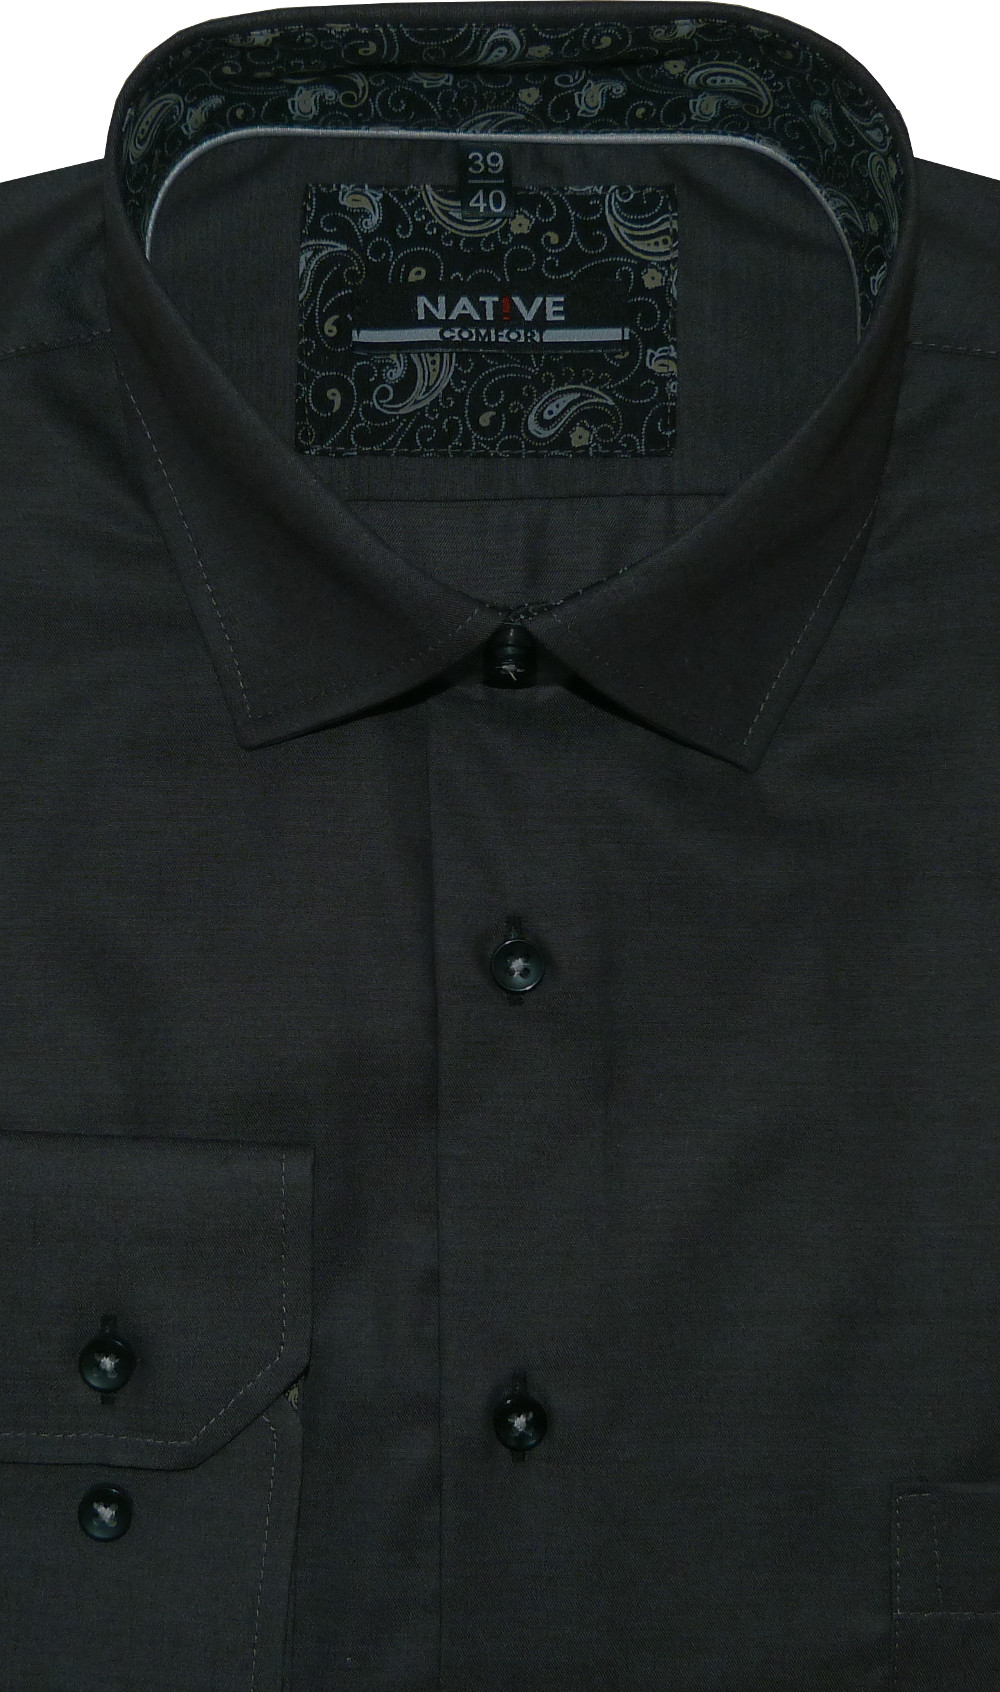 Pánská košile (šedá) s dlouhým rukávem, vel. 41/42 - N195/311